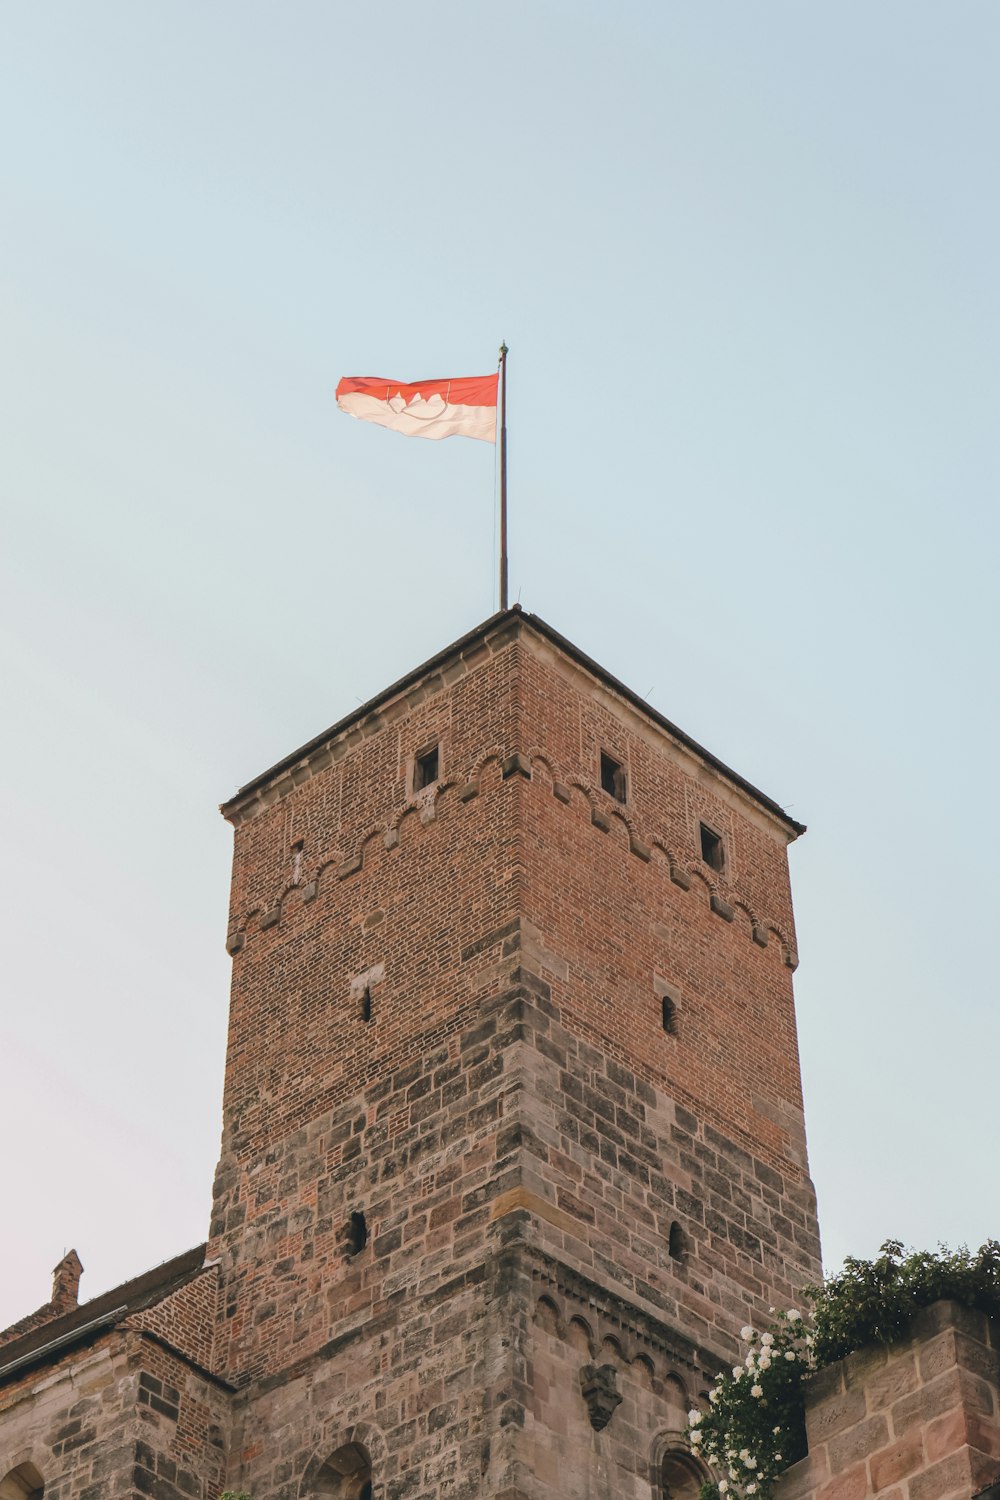 그 위에 깃발이 달린 높은 벽돌 건물